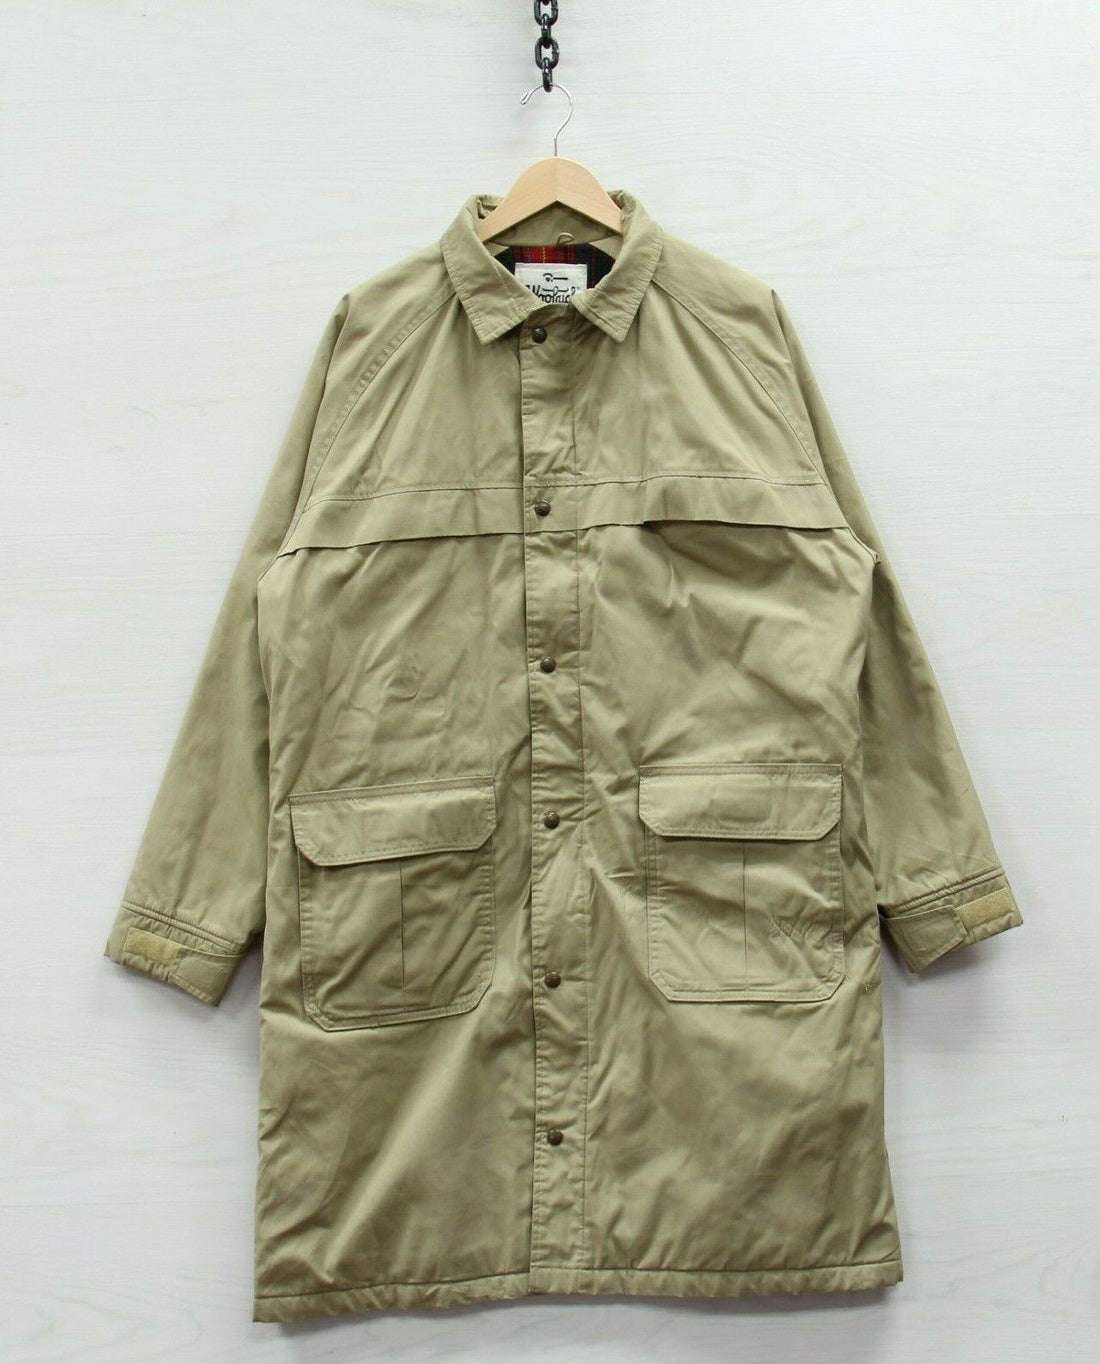 Vintage Woolrich Field Parka Coat Jacket Size XL Beige Wool Plaid Lined